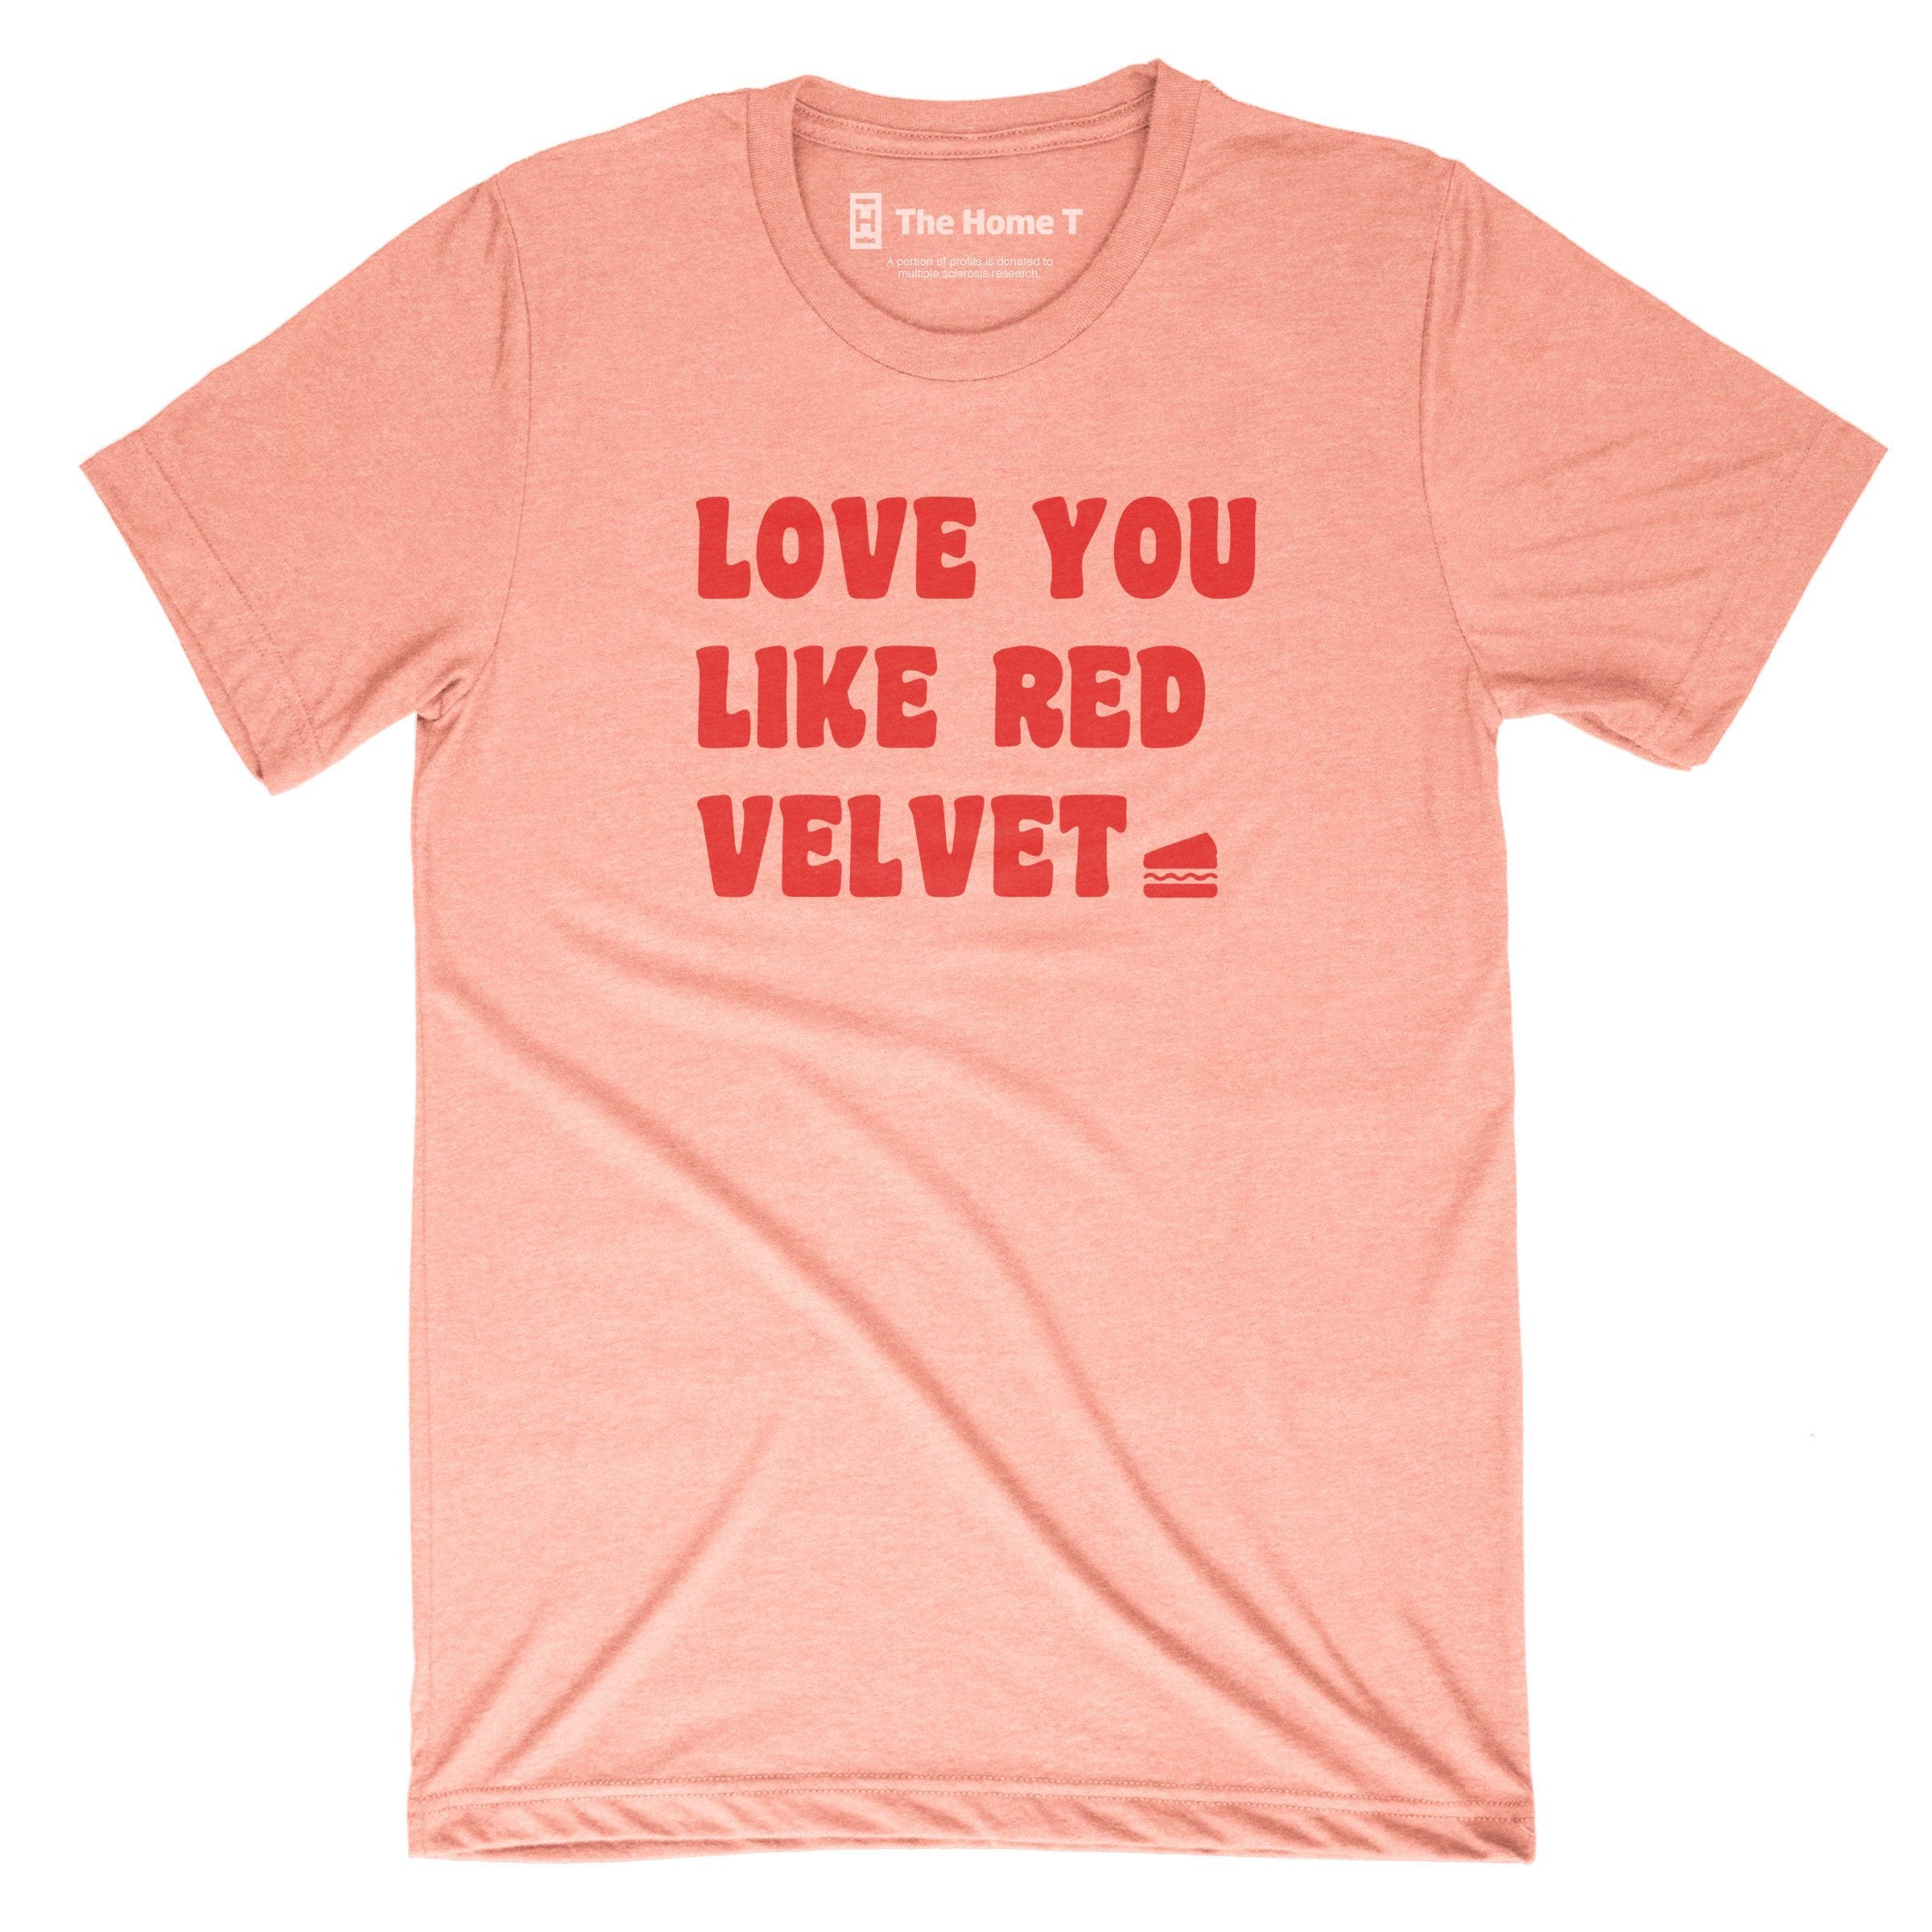 Love you like red velvet